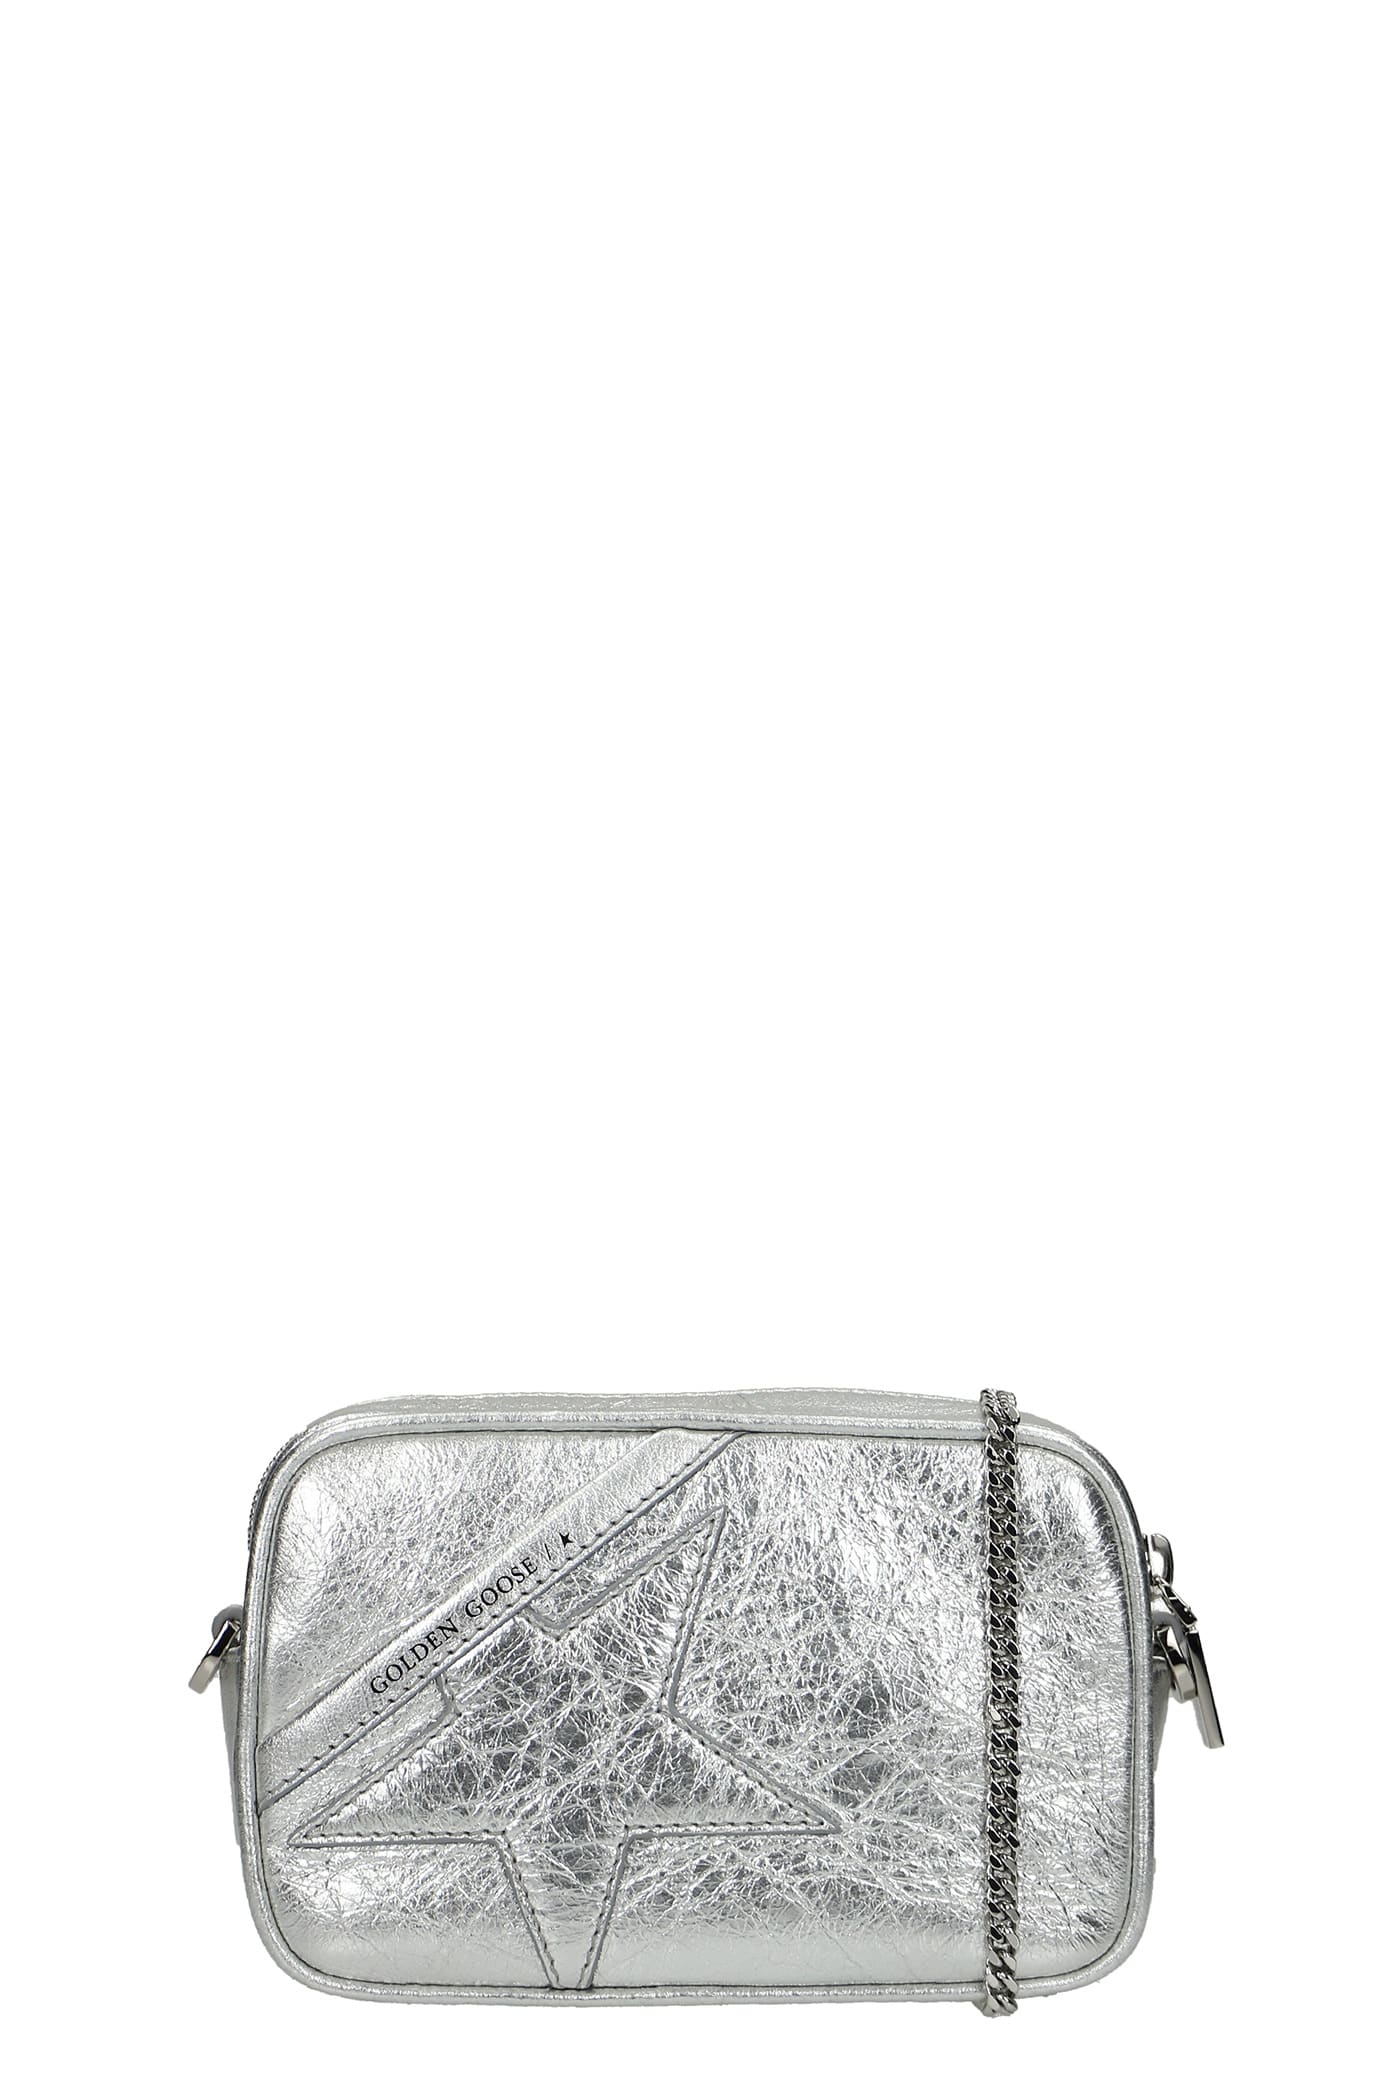 Golden Goose Mini Star Shoulder Bag In Silver Leather